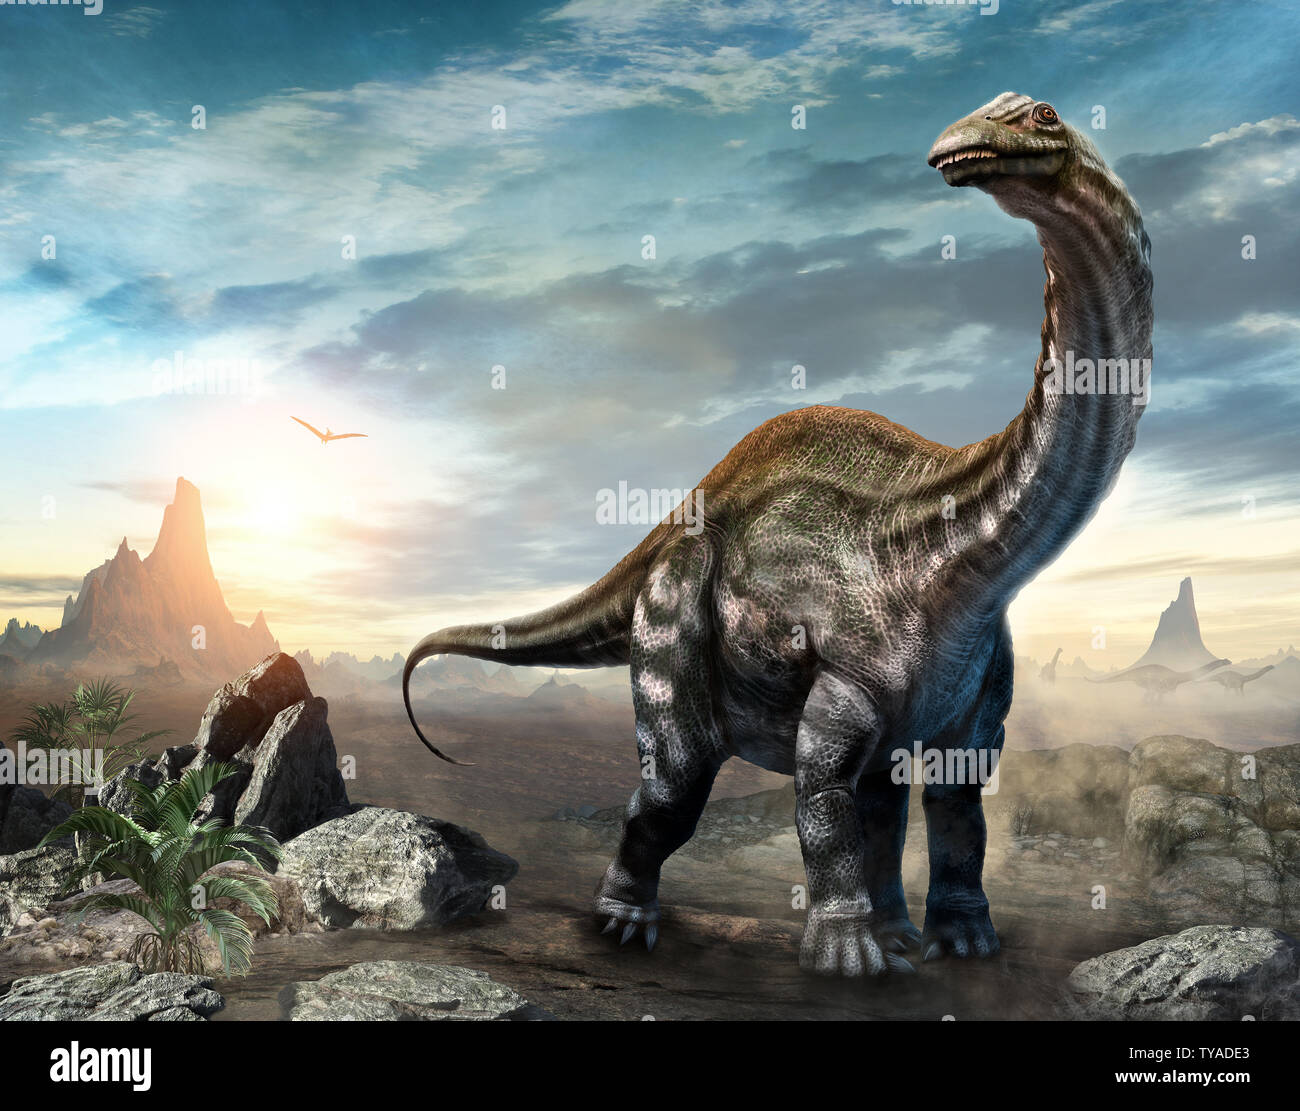 Apatosaurus dinosaur scene 3D illustration Stock Photo